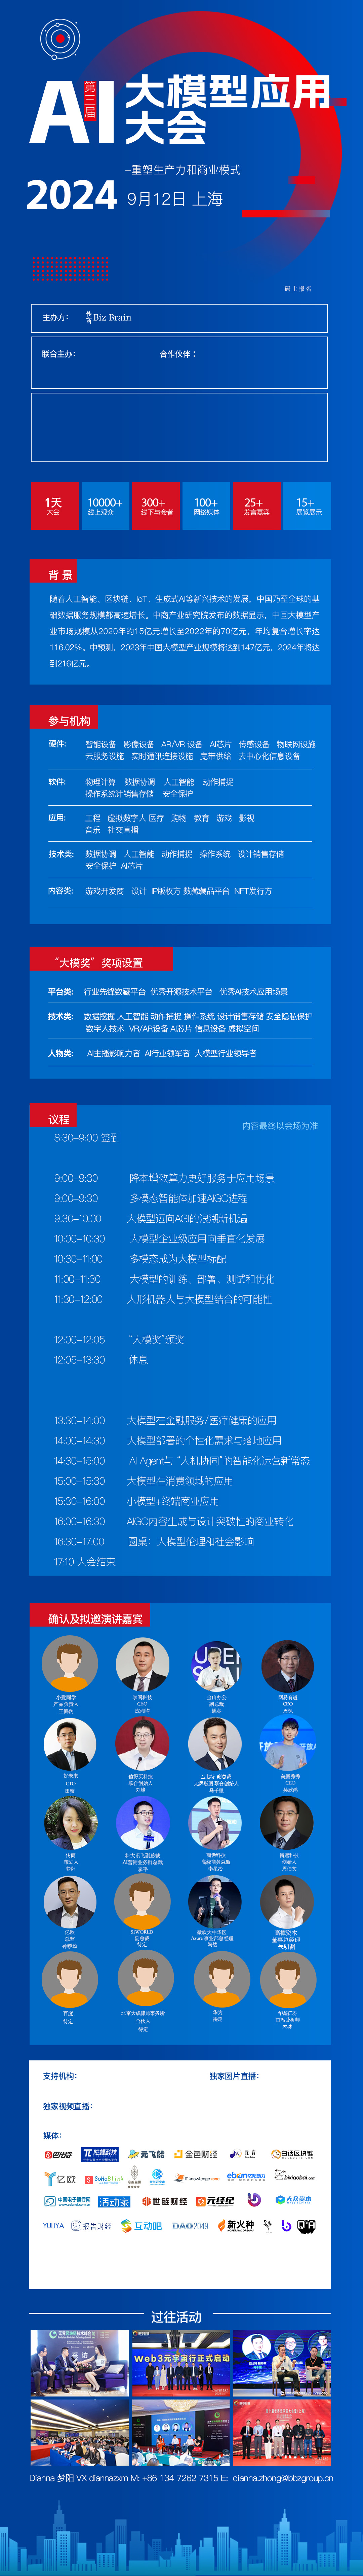 AI大模型应用大会2024/9/12上海